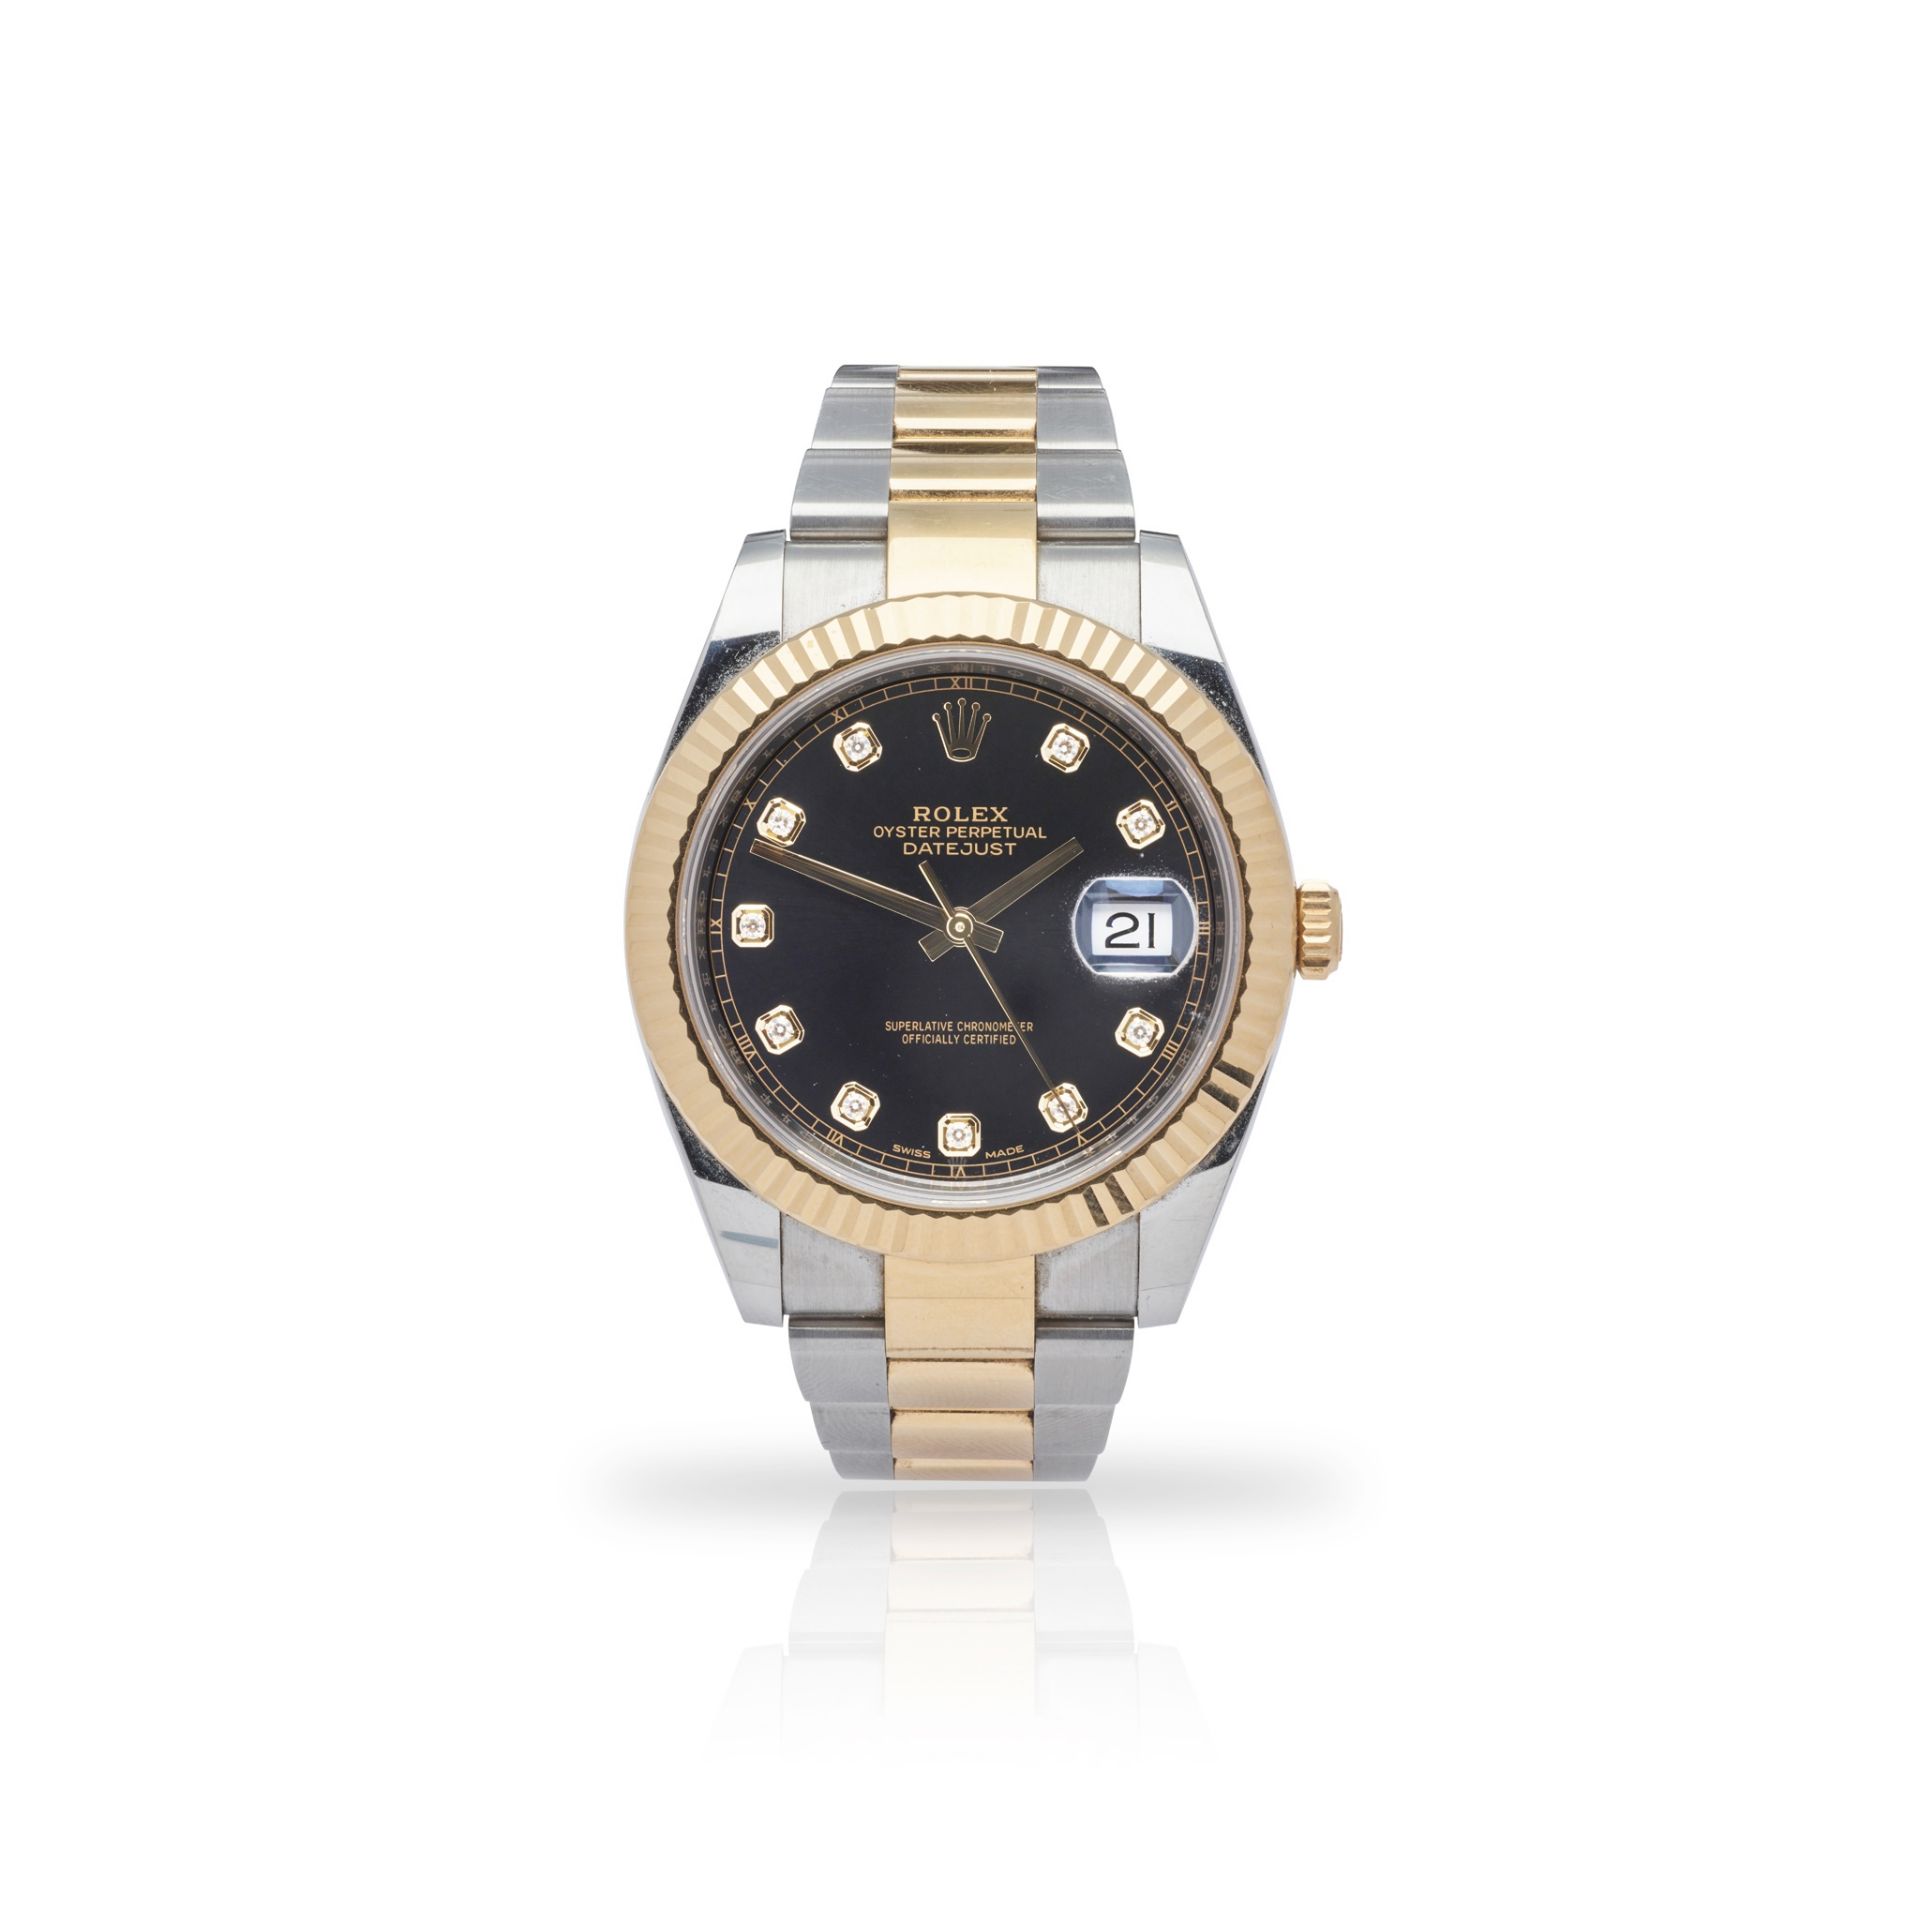 Rolex: a bi-colour wrist watch